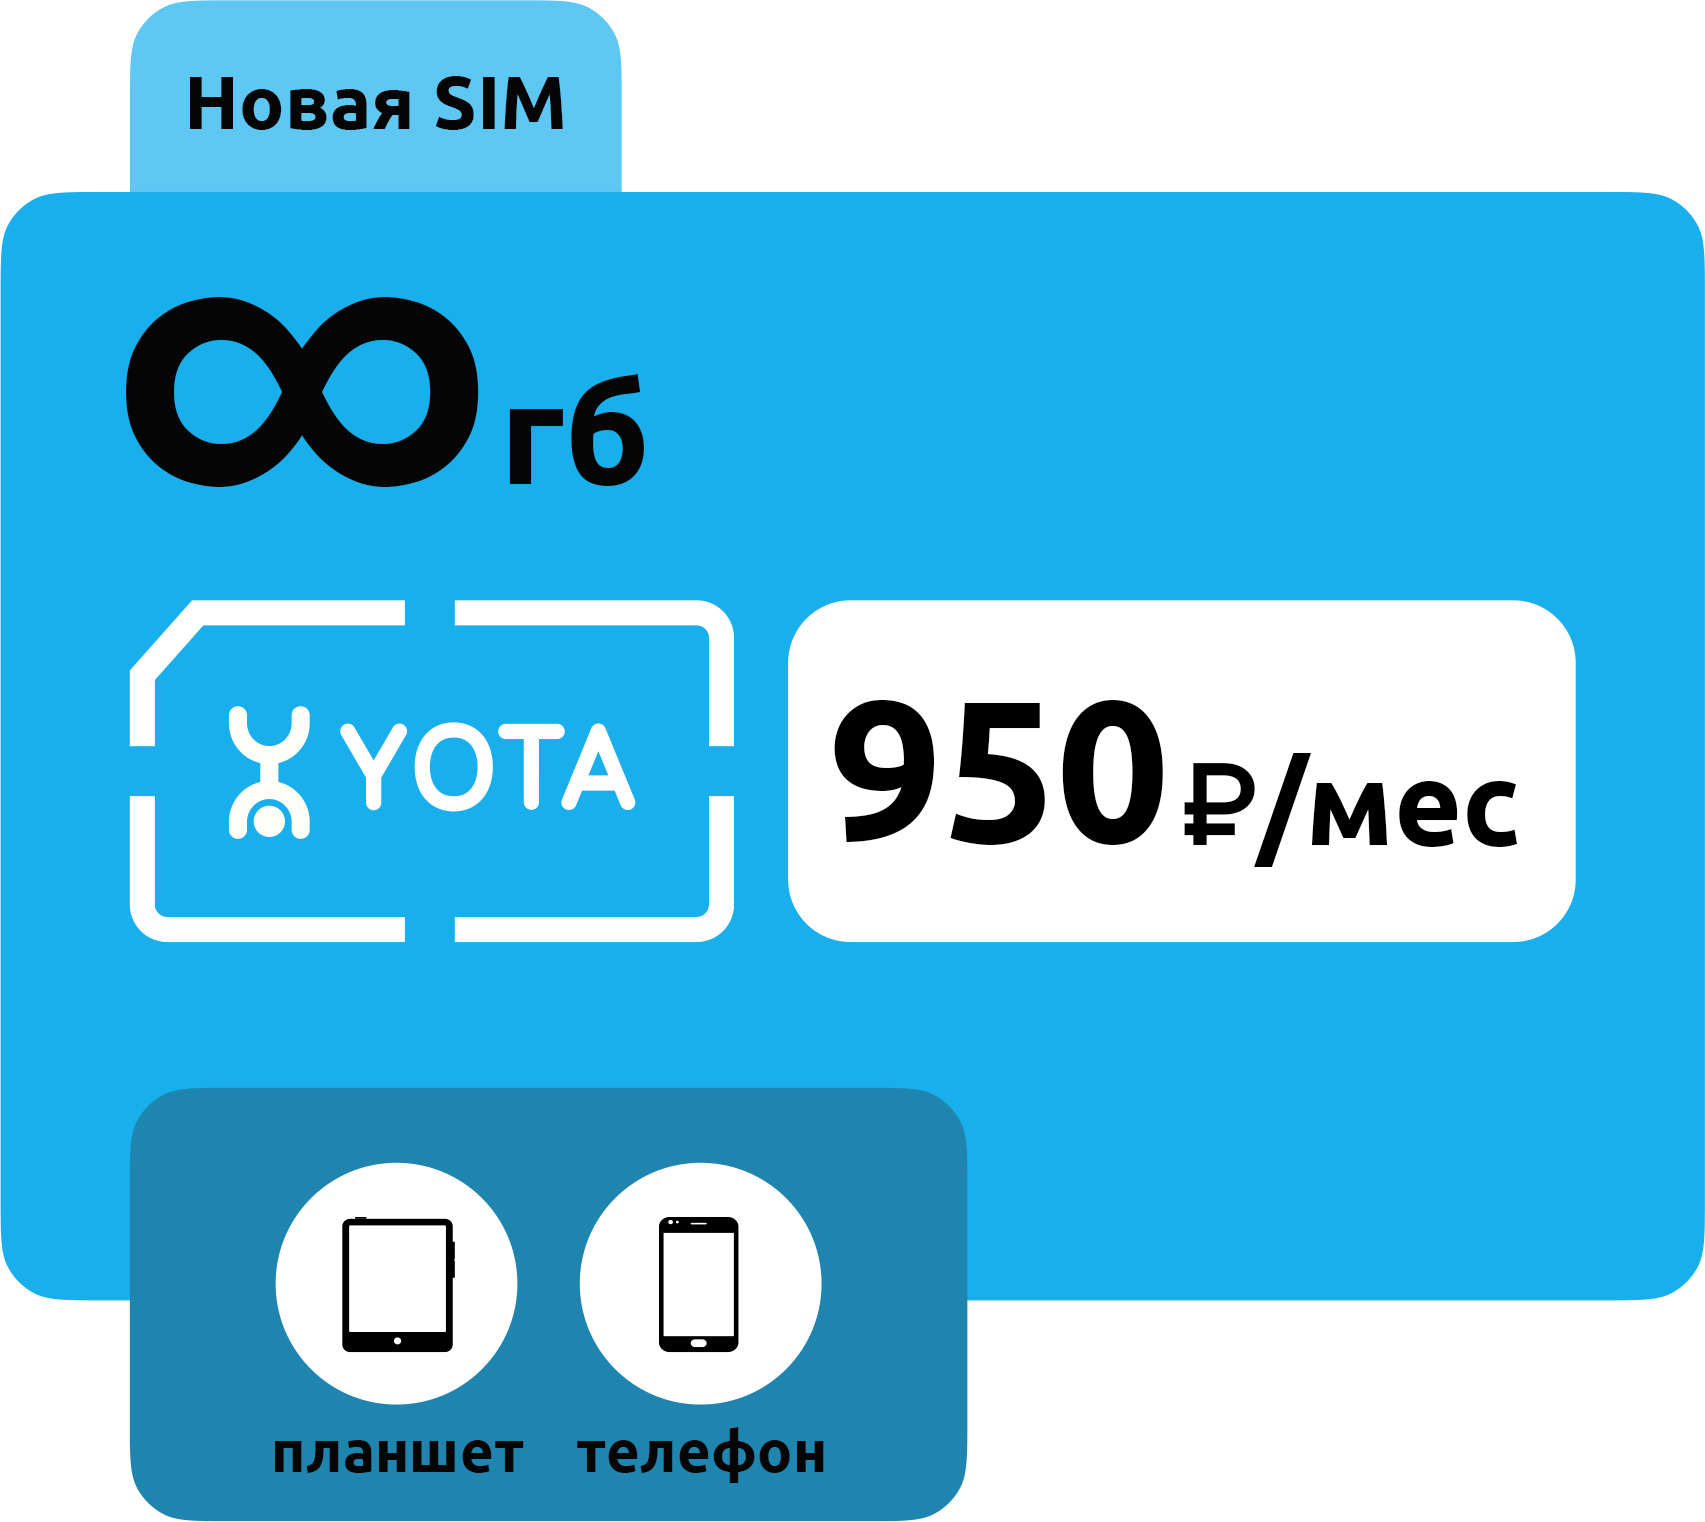 SIM-карта Yota 950 фото